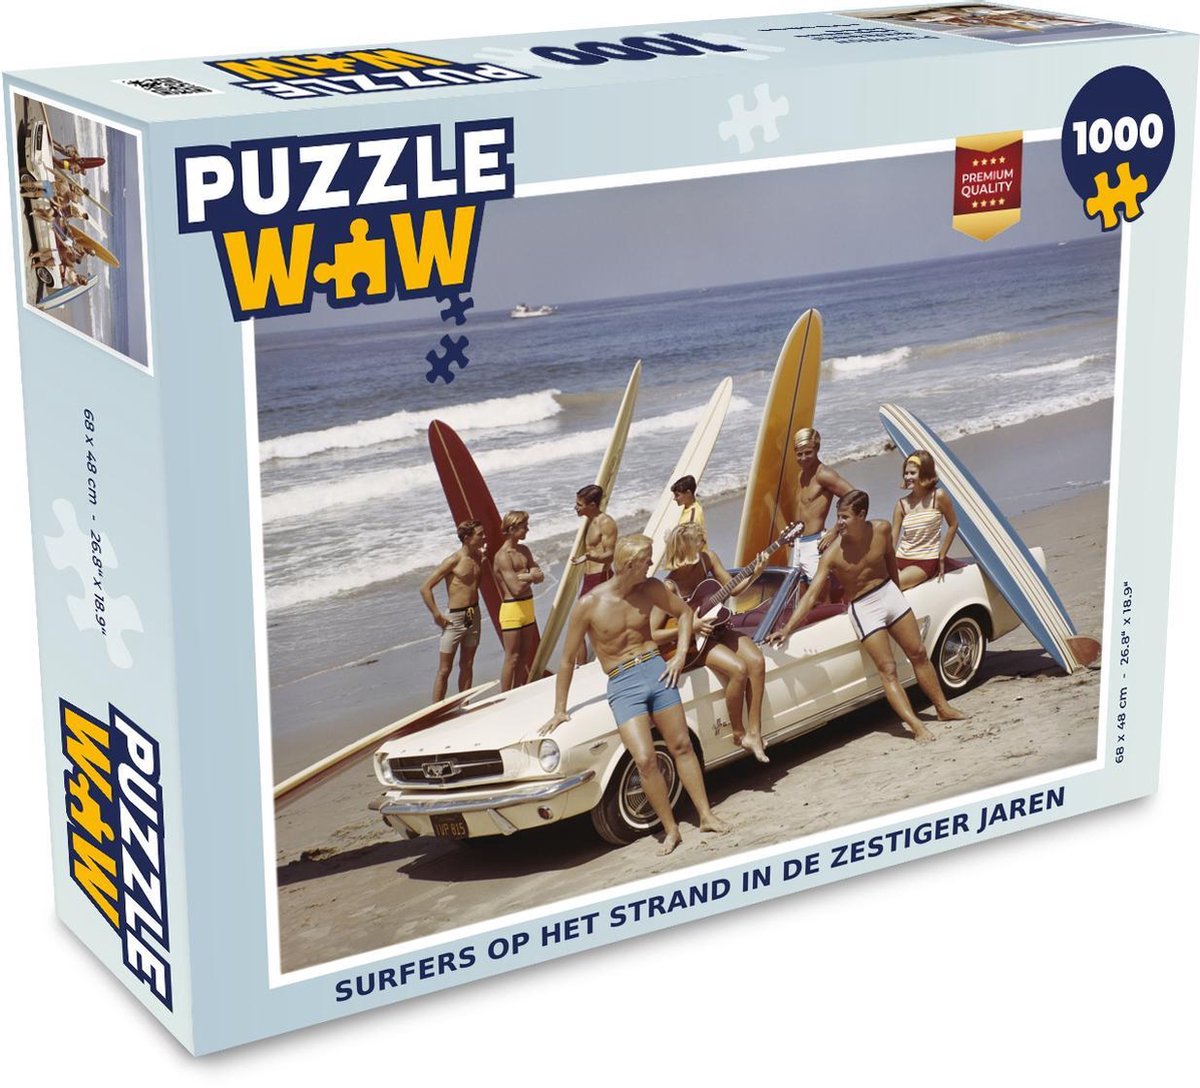 Afbeelding van product Puzzel 1000 stukjes volwassenen Vintage Living 1000 stukjes - Surfers op het strand in de zestiger jaren - PuzzleWow heeft +100000 puzzels